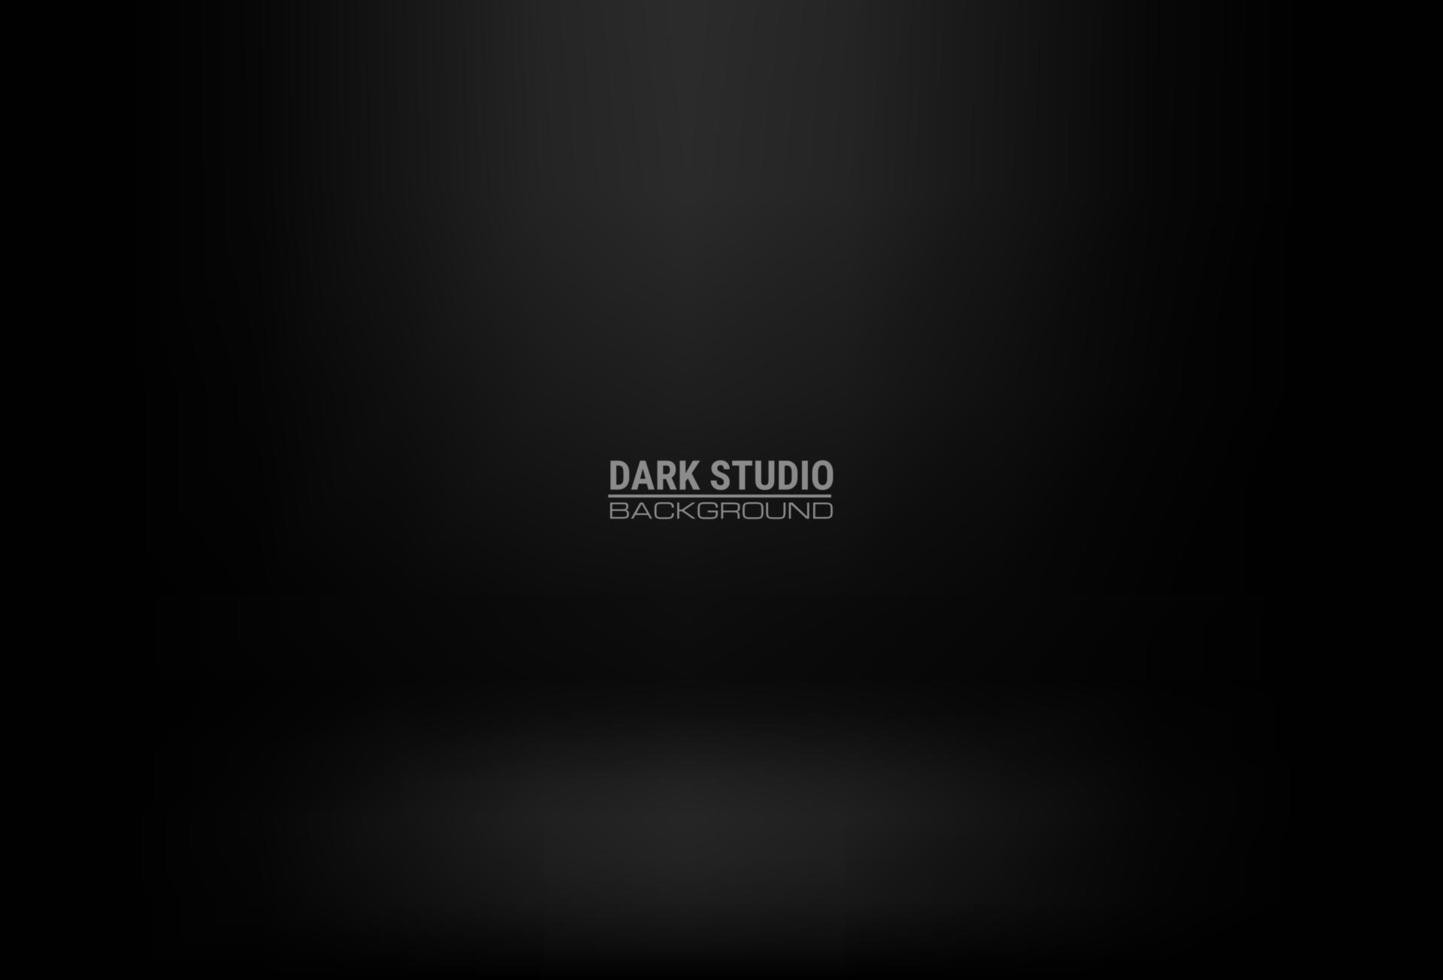 mörkgrå tomrumsstudiogradient bäst för svart bakgrund och visningsprodukt. realistisk mörk plattform vektor